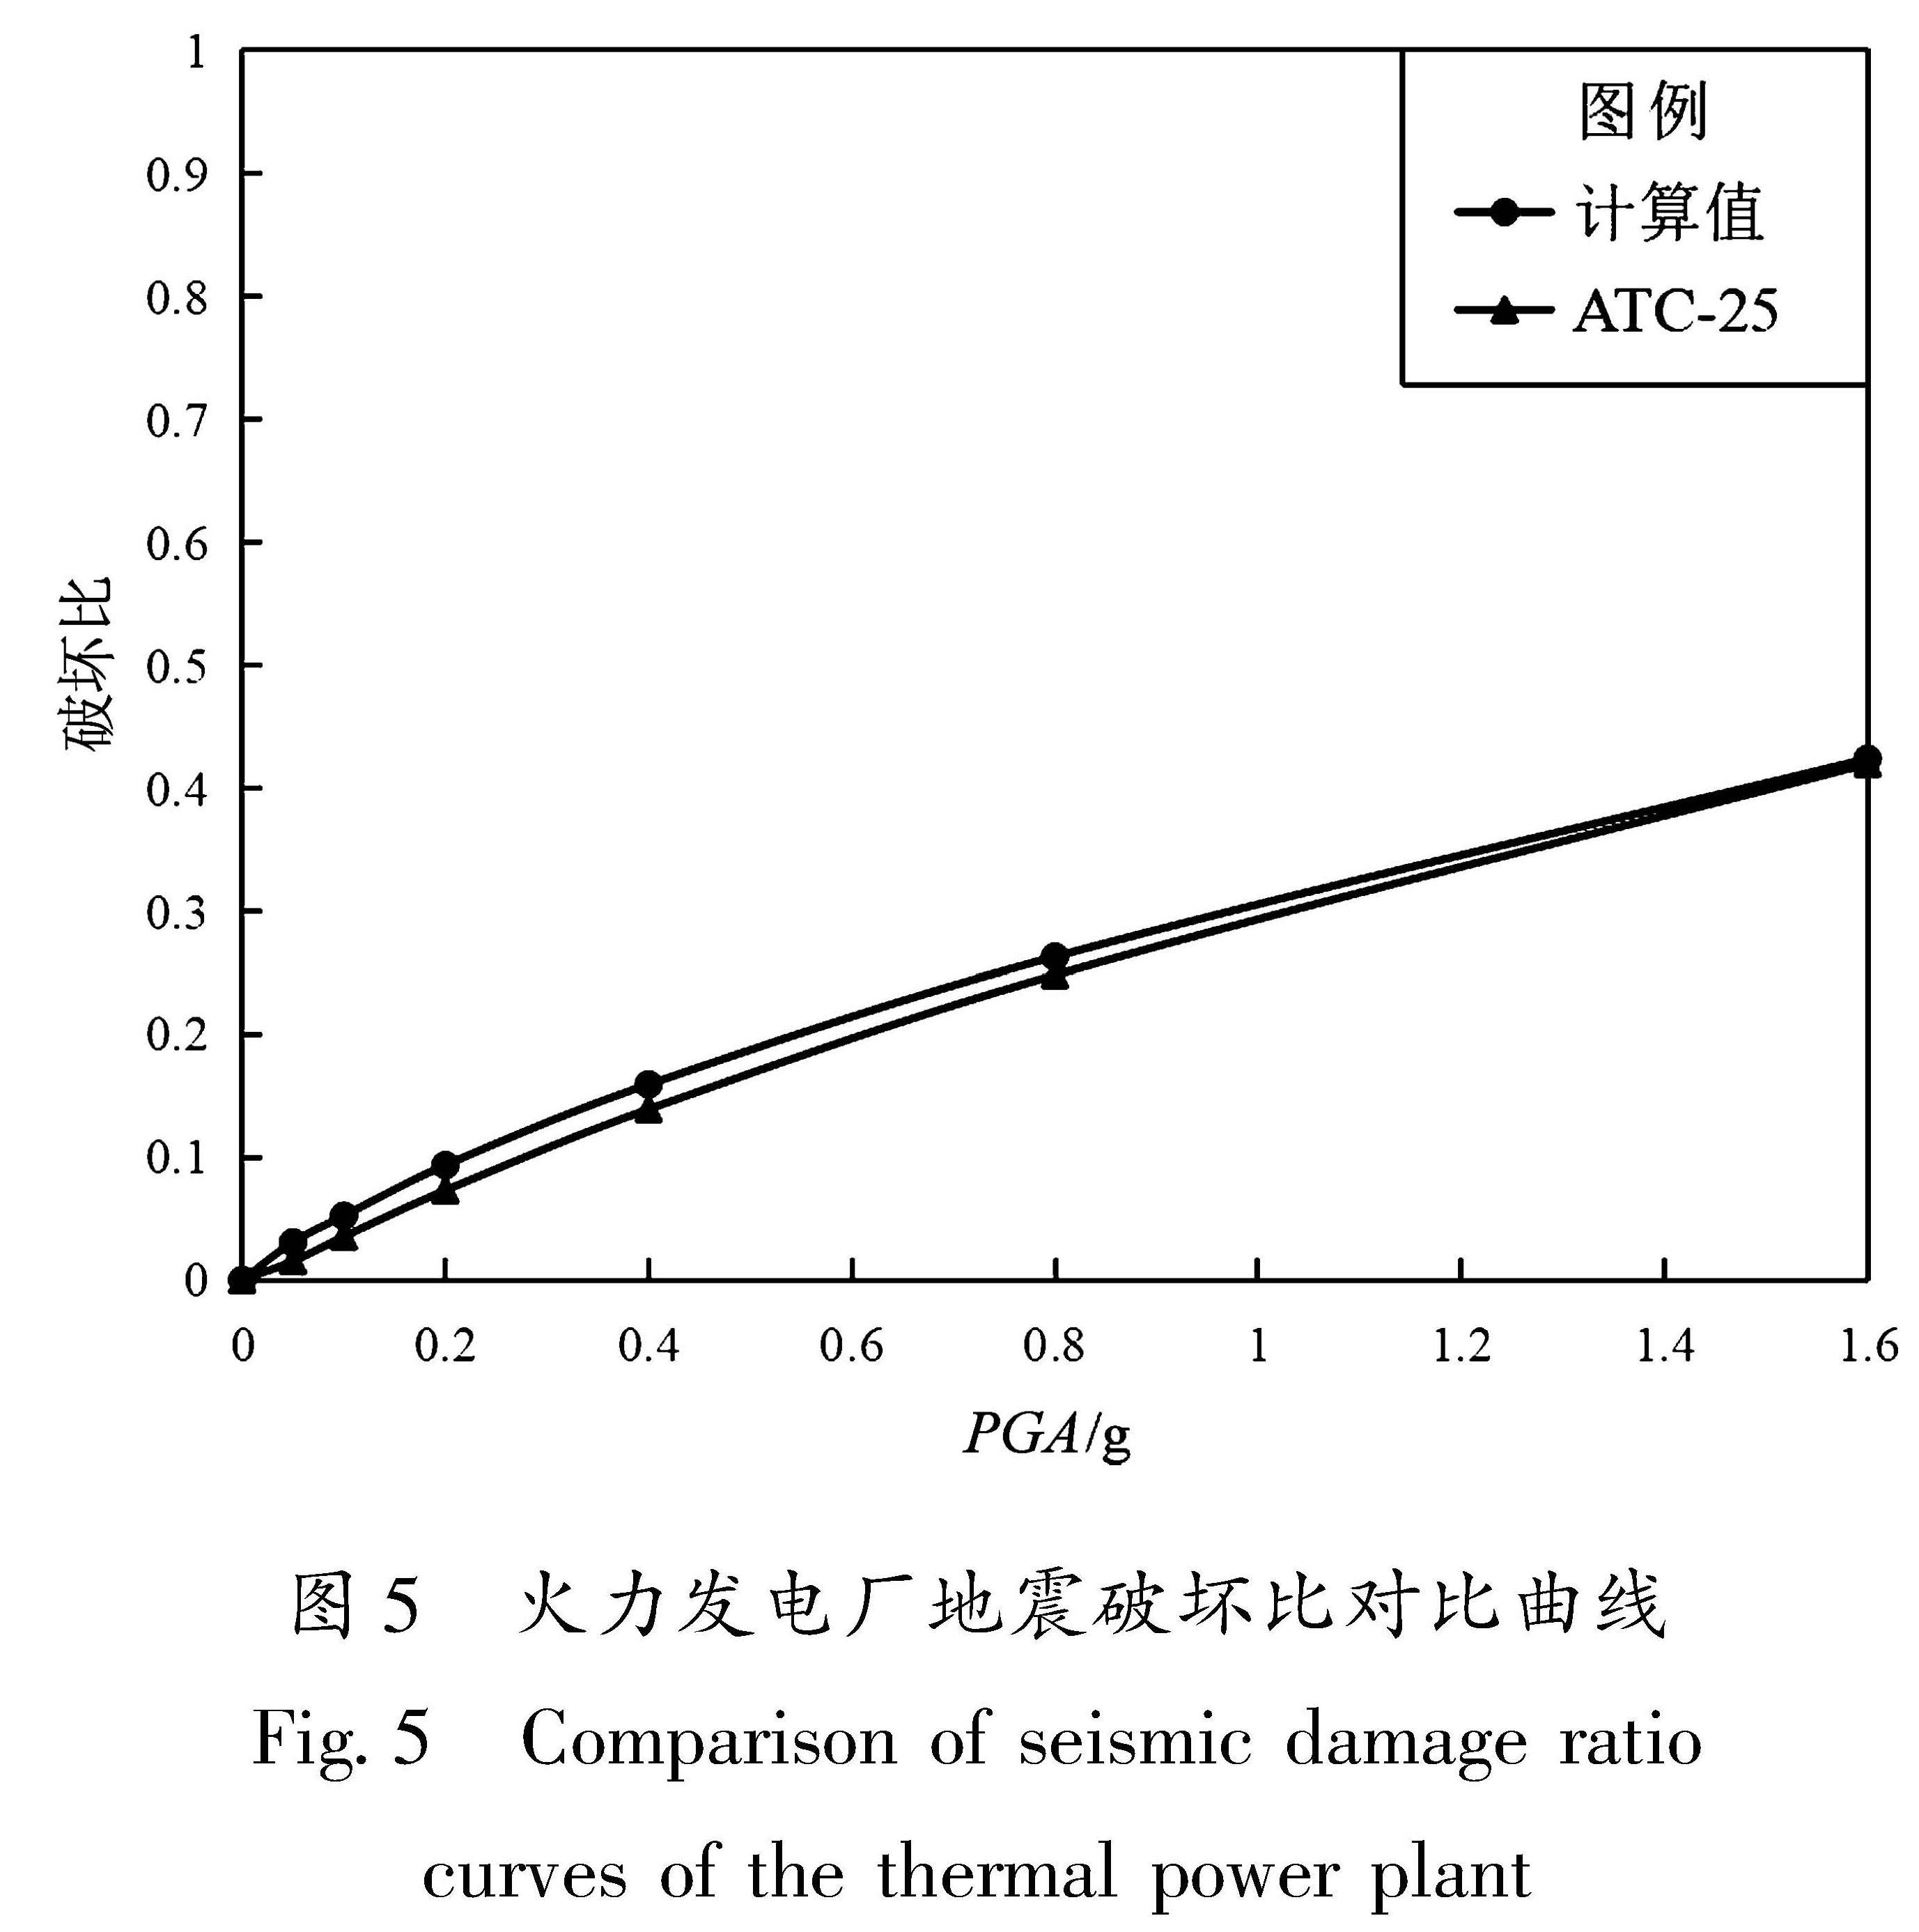 图5 火力发电厂地震破坏比对比曲线<br/>Fig.5 Comparison of seismic damage ratio curves of the thermal power plant